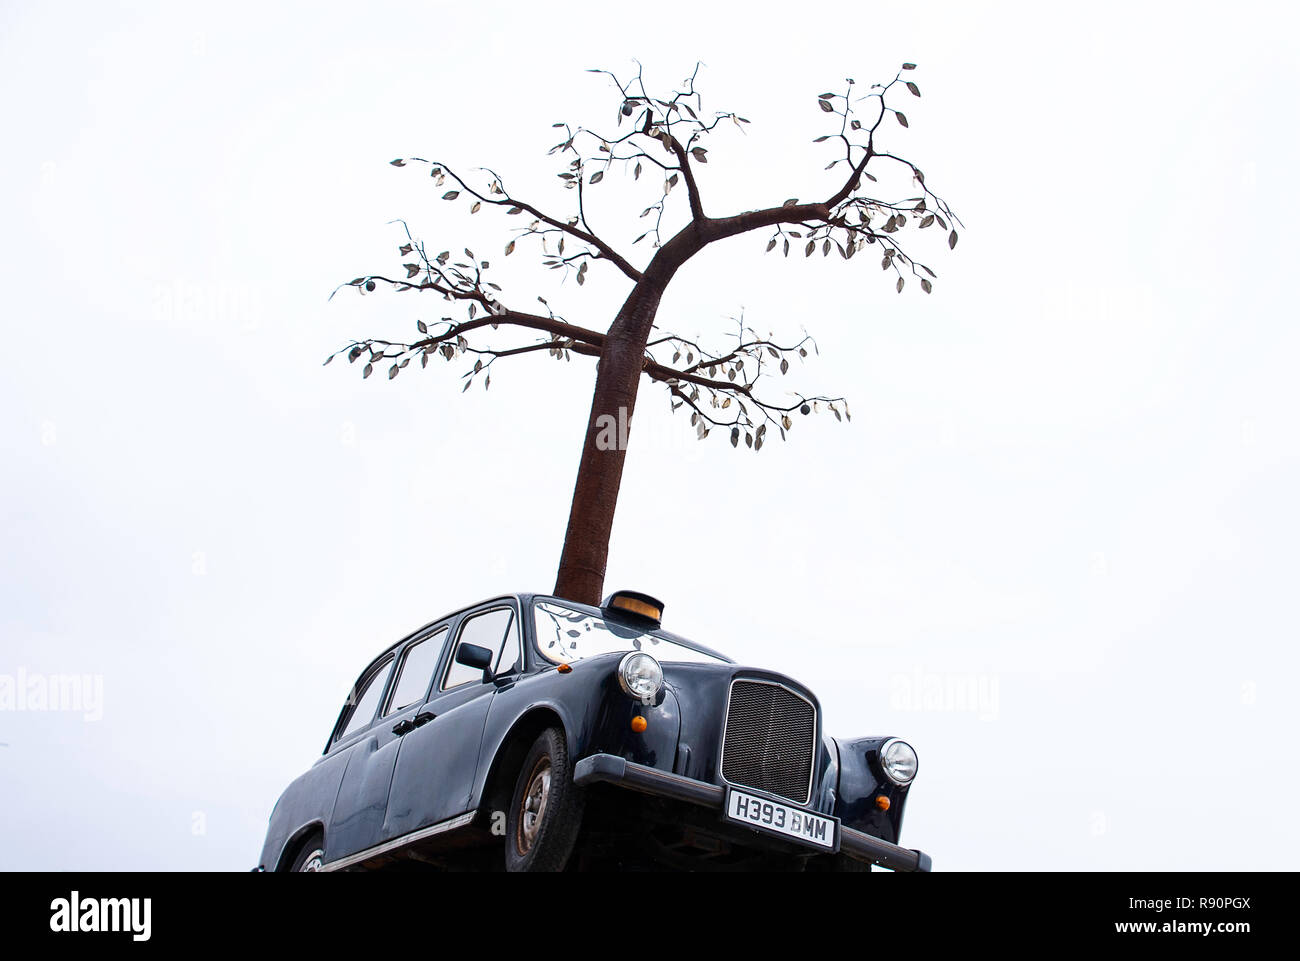 Tree in a black London cab at Trinity Buoy Wharf, London, UK Stock Photo